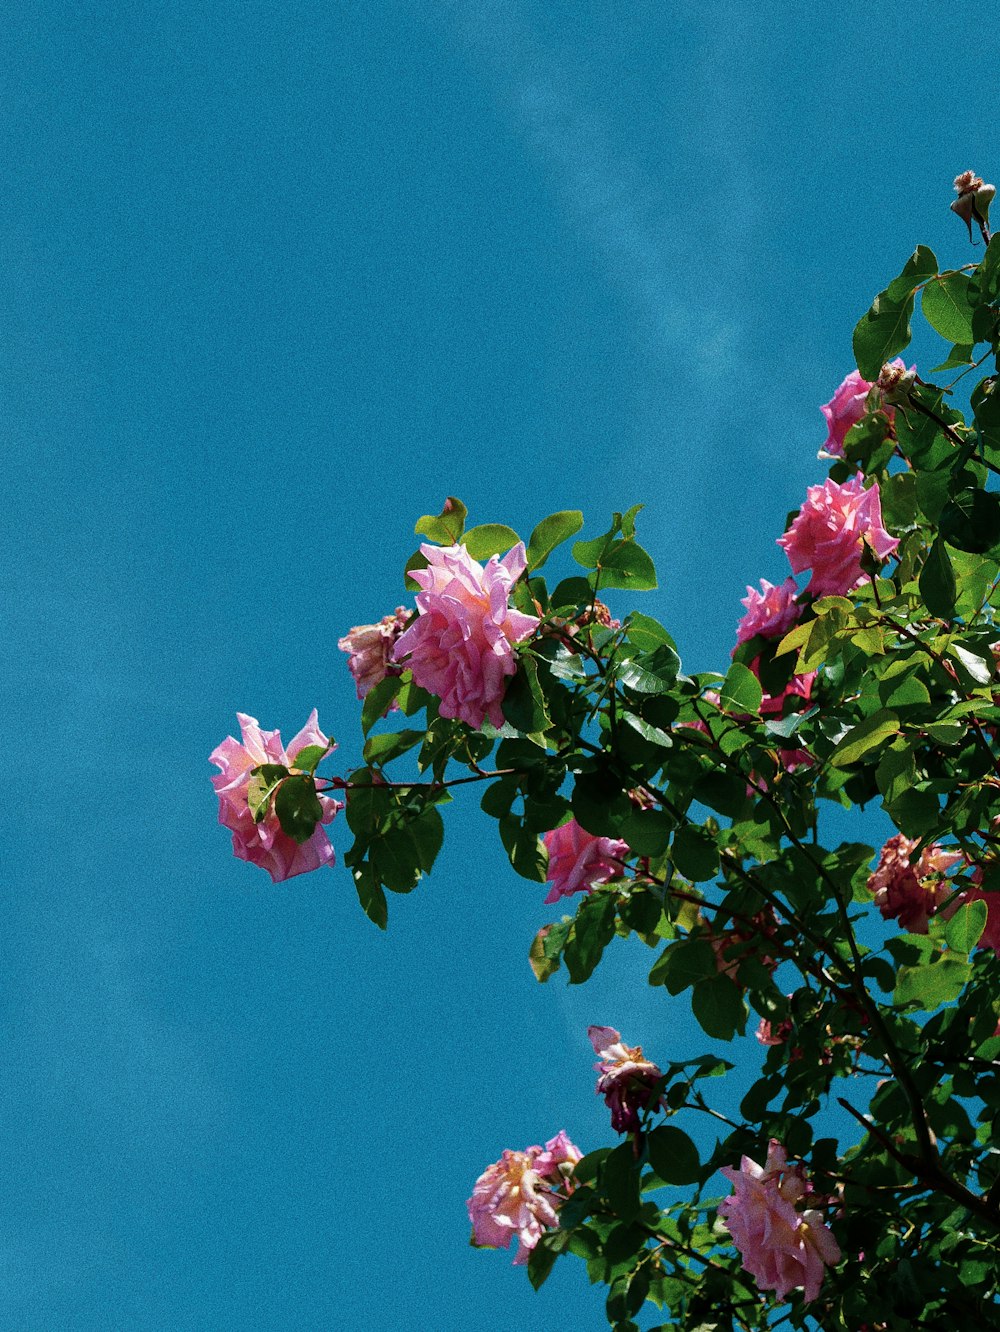 pink flower under blue sky during daytime